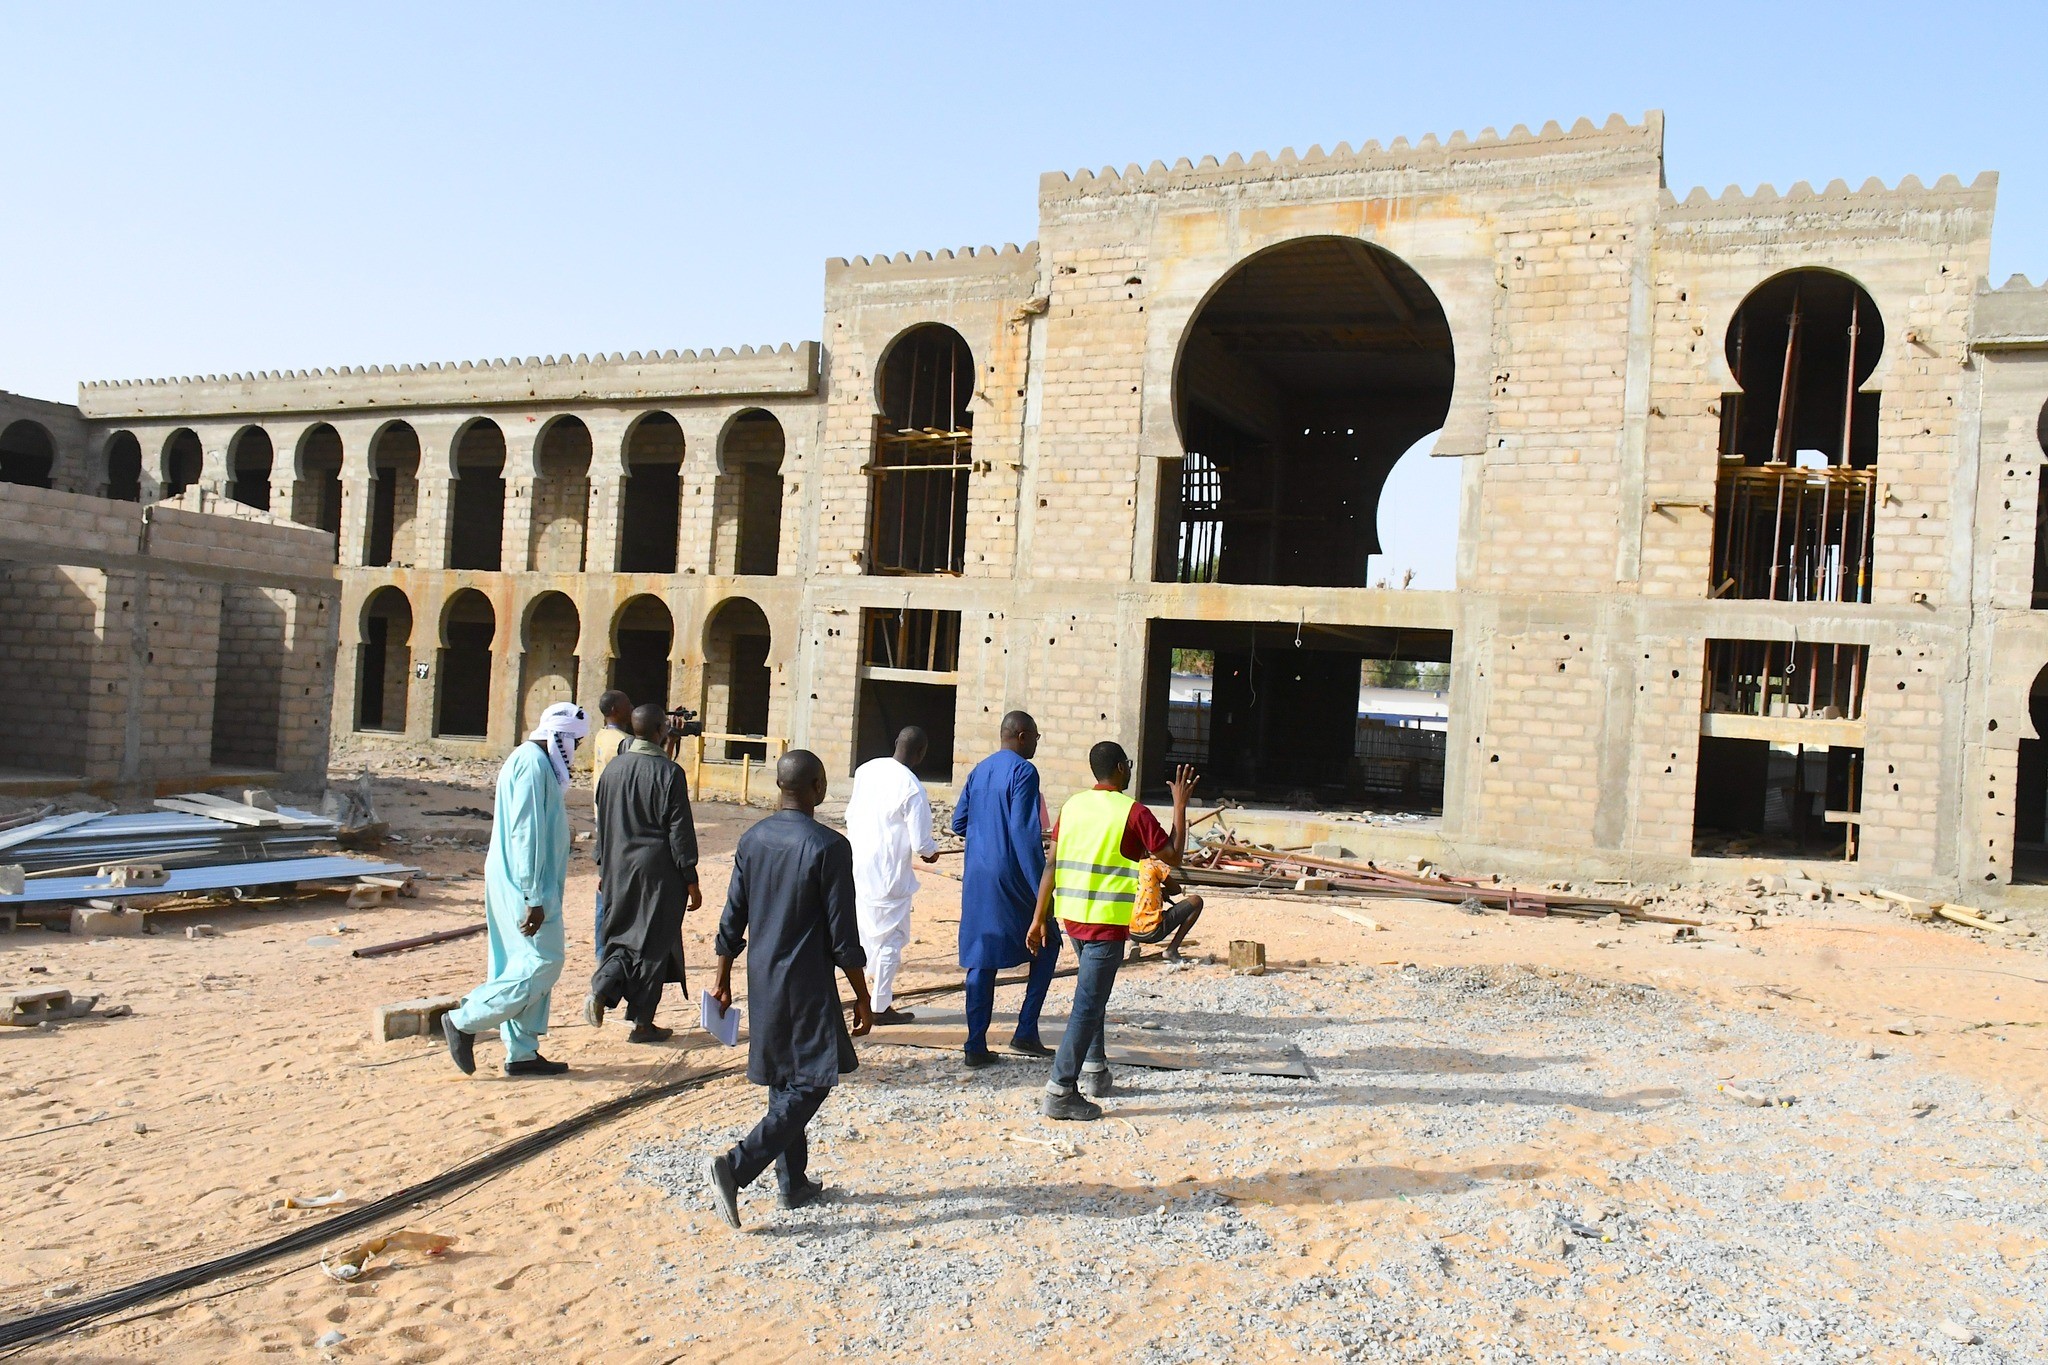 Tchad : La ville de Faya sera dotée d’un hôpital provincial et un hôtel trois étoiles